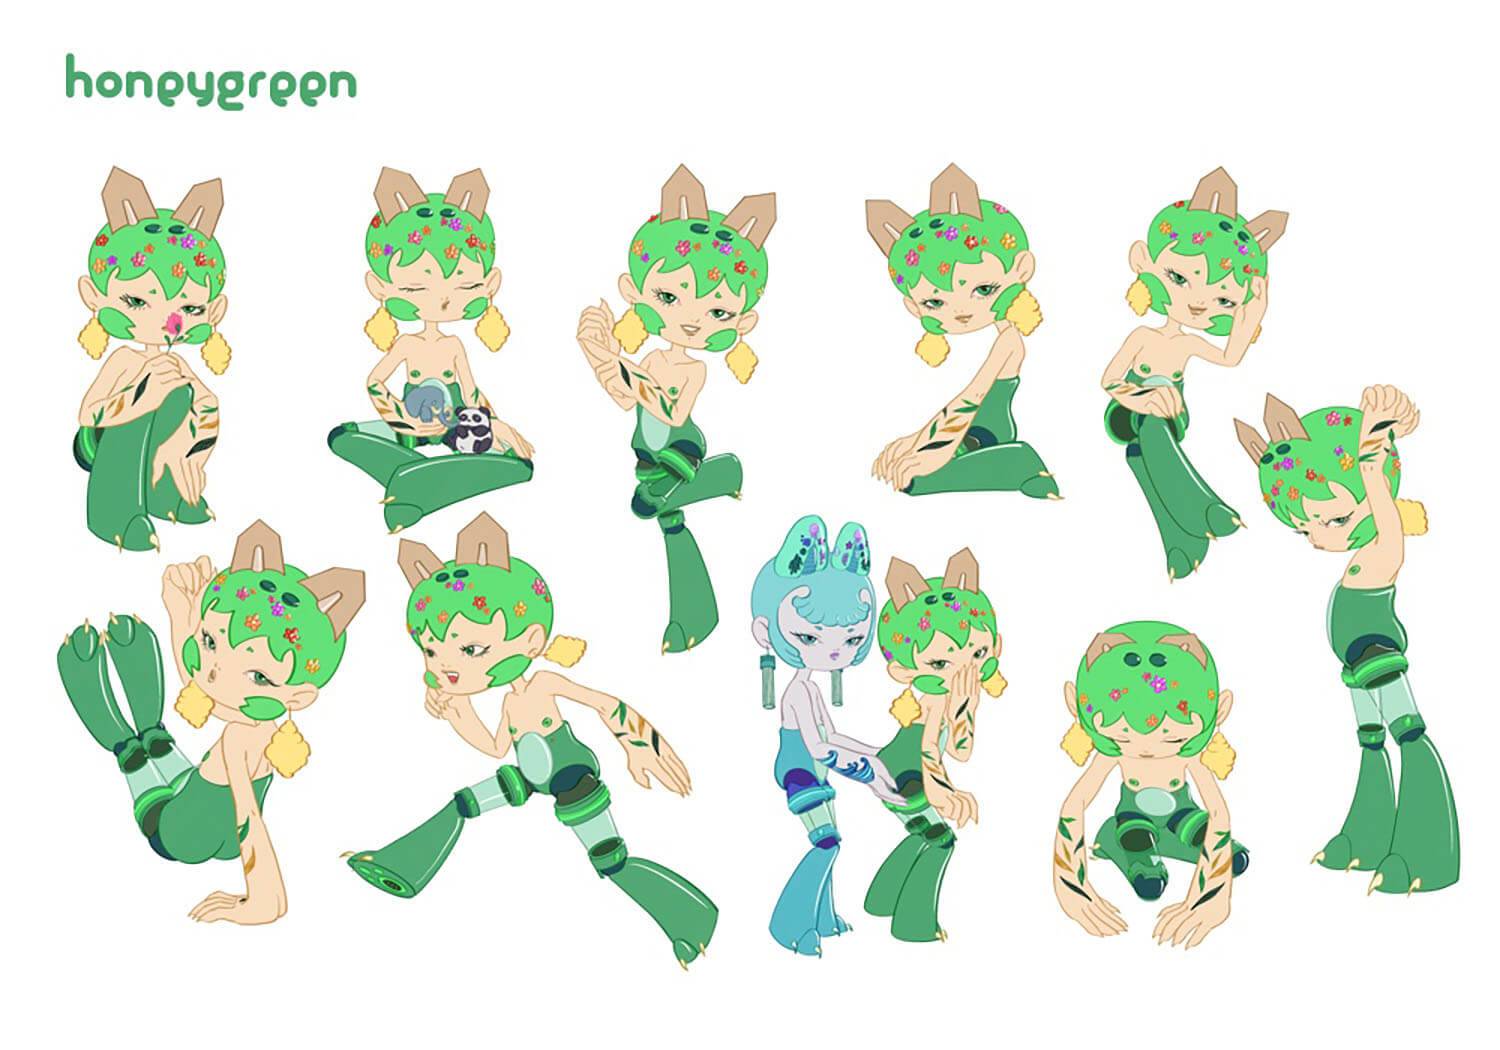 Honeygreen Character Poses